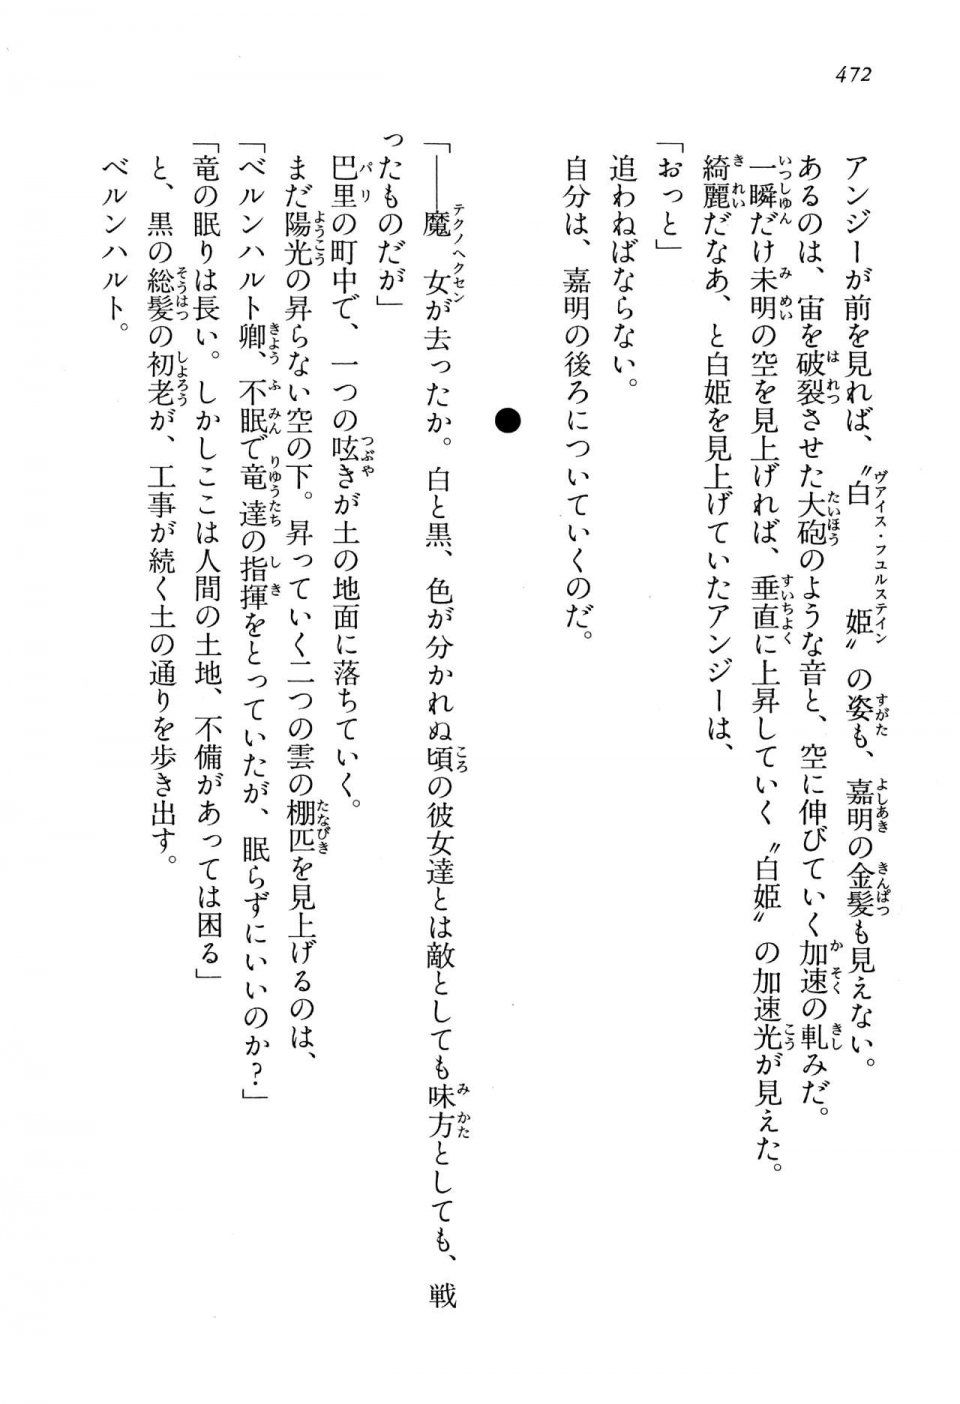 Kyoukai Senjou no Horizon LN Vol 13(6A) - Photo #472